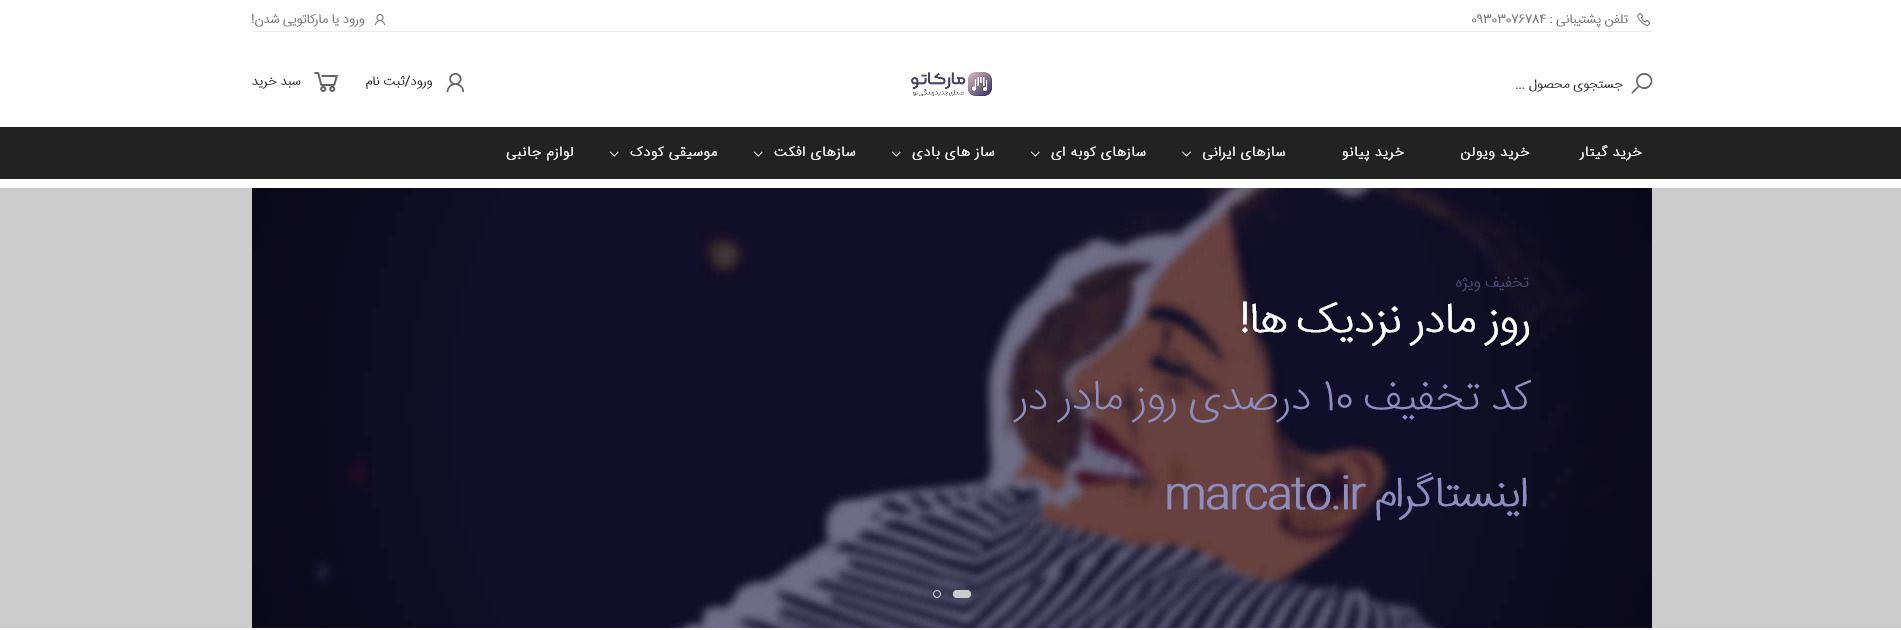 هدر وبسایت فروشگاهی ساز و آلات موسیقی مارکاتو خرداد ۱۴۰۰